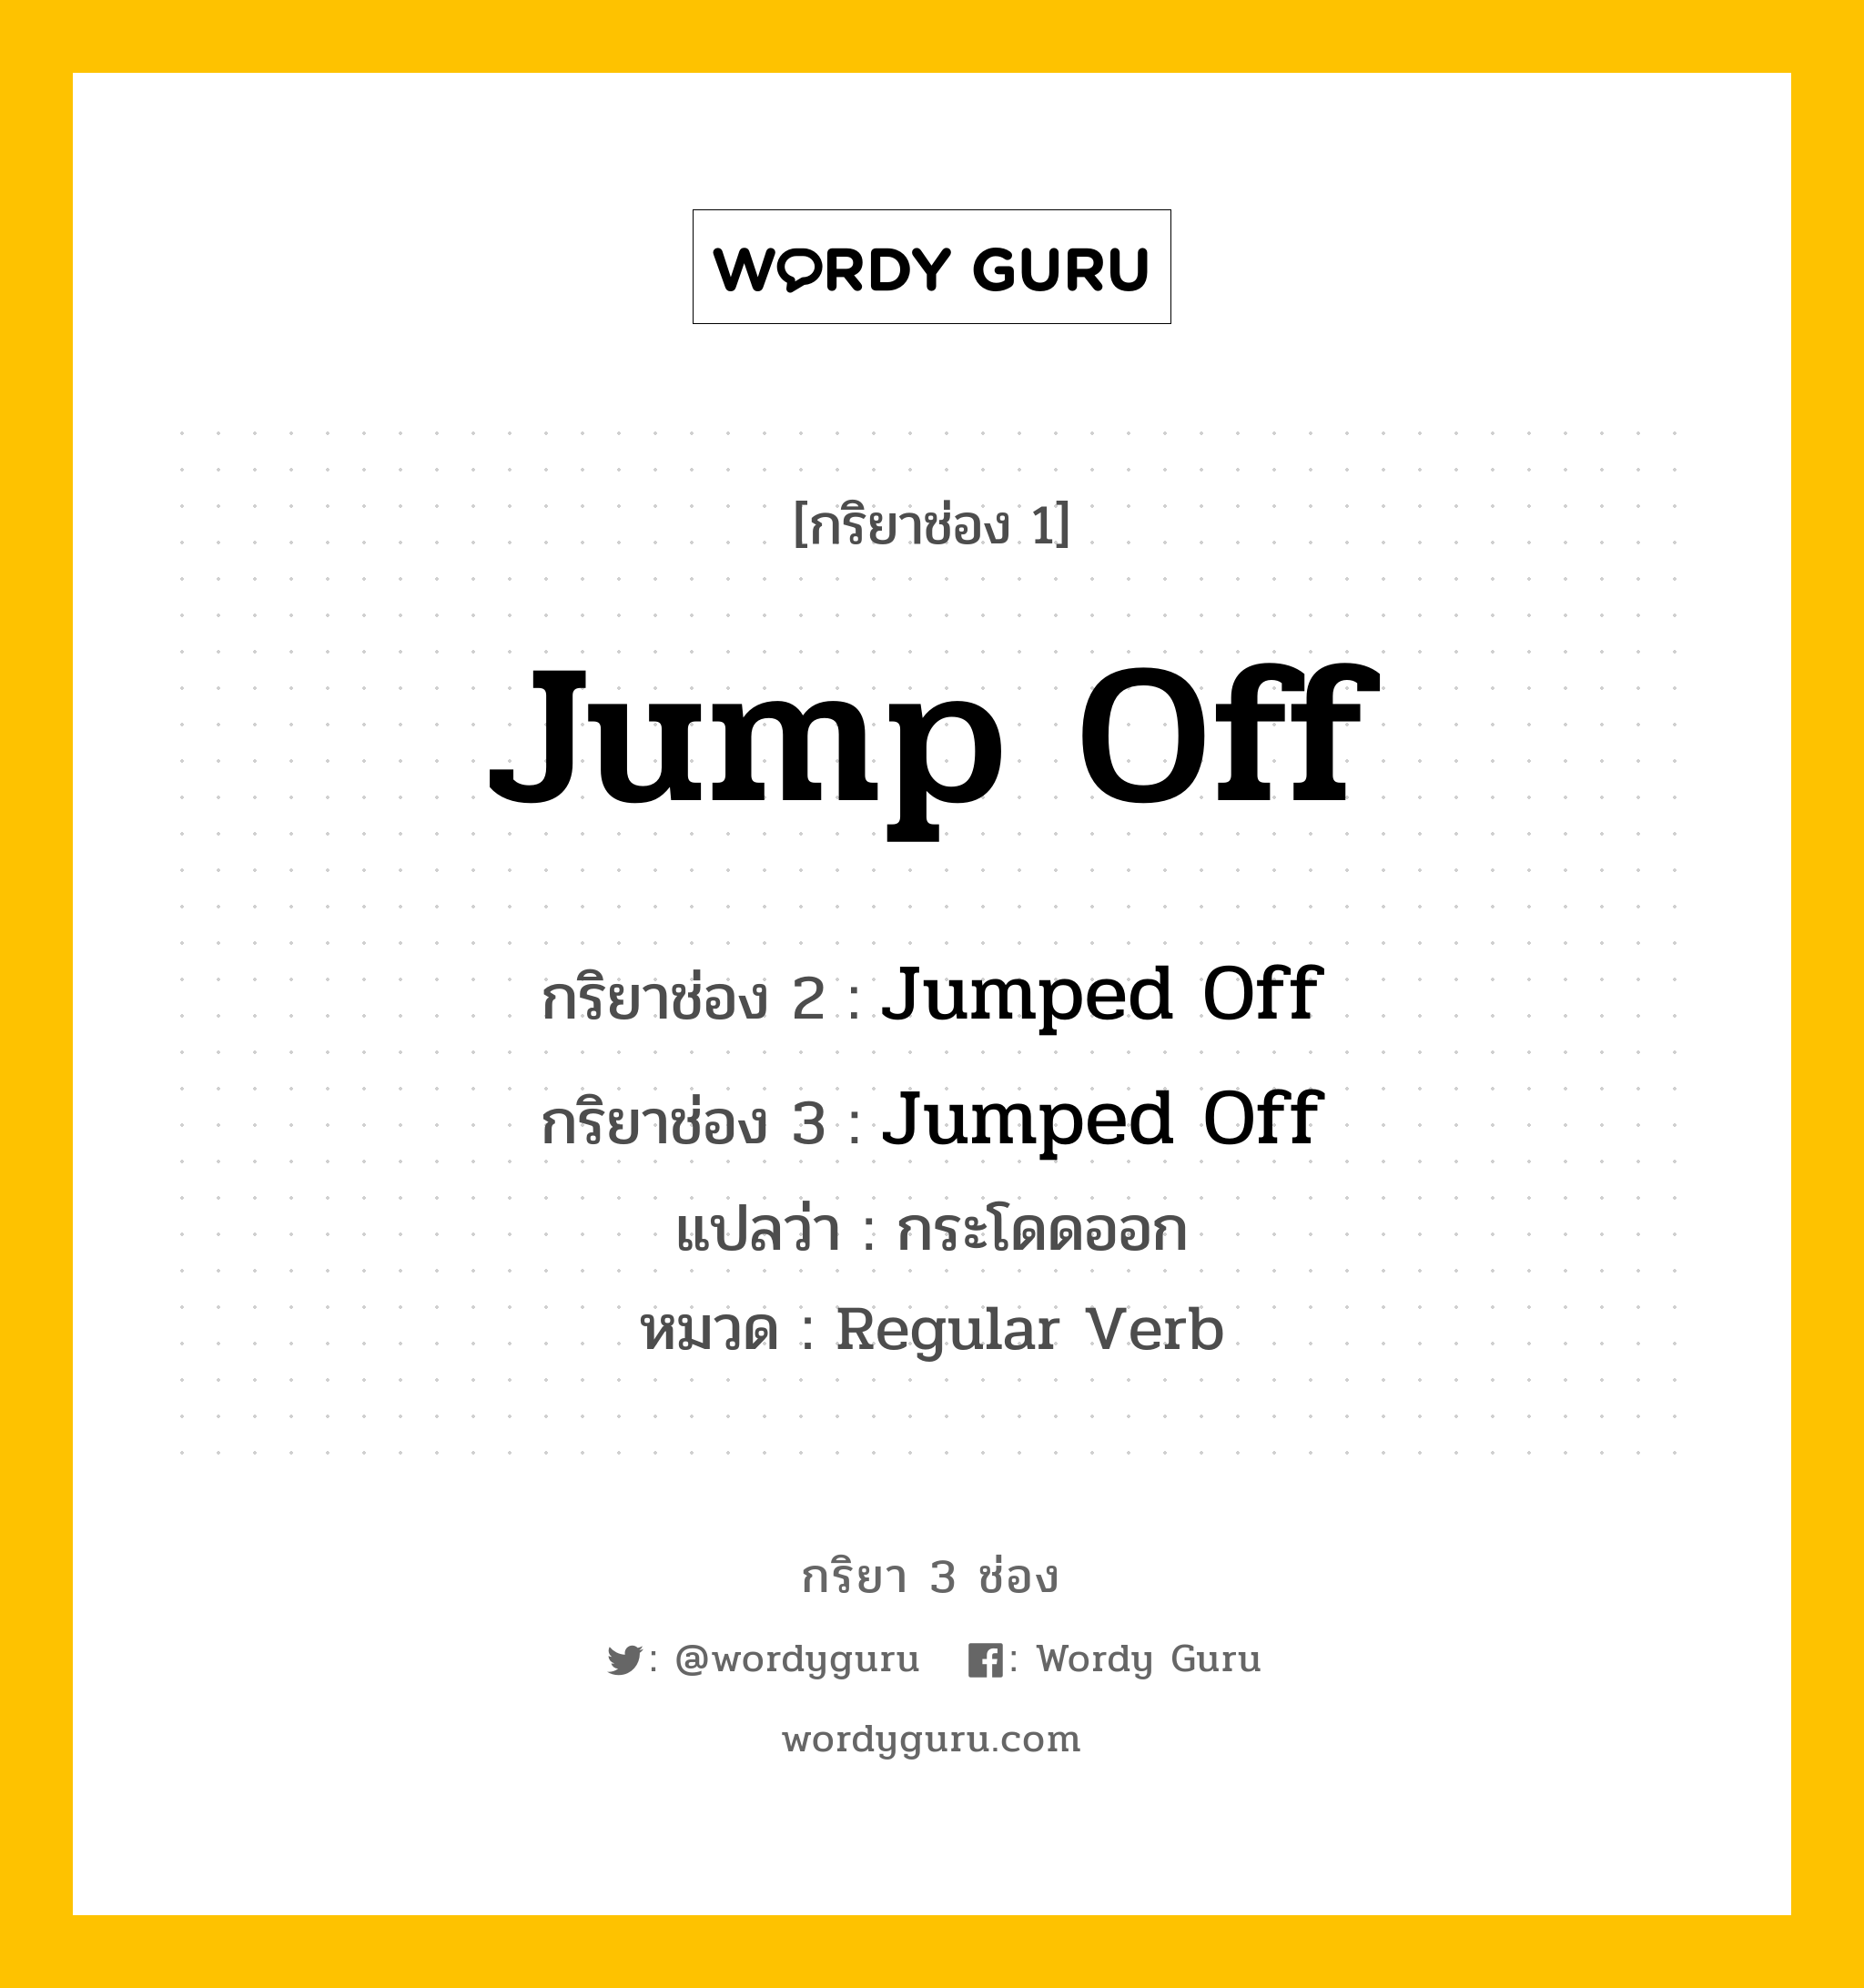 กริยา 3 ช่อง: Jump Off ช่อง 2 Jump Off ช่อง 3 คืออะไร, กริยาช่อง 1 Jump Off กริยาช่อง 2 Jumped Off กริยาช่อง 3 Jumped Off แปลว่า กระโดดออก หมวด Regular Verb หมวด Regular Verb